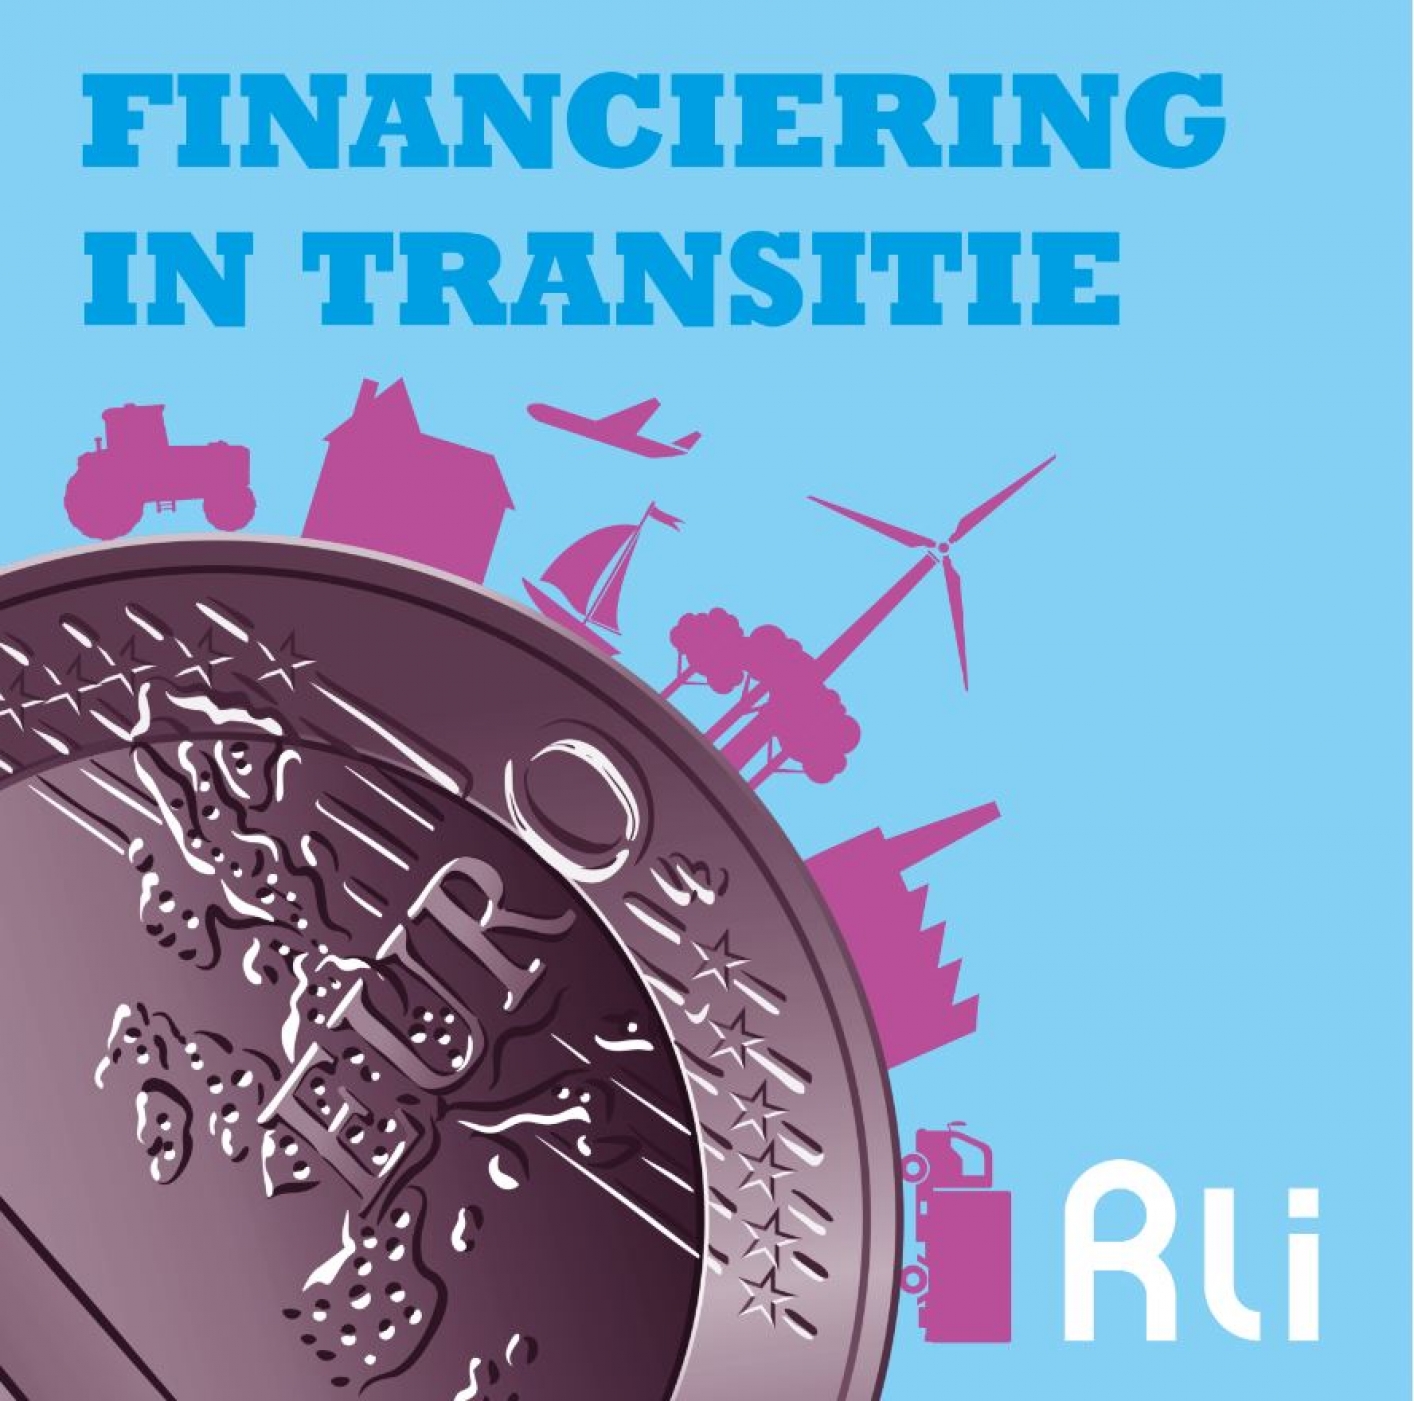 logo van podcast Finaciering in transitie, een beeld van een euro met daarbij een tractor, huis, vliegtuig, windmolen, bos en industrie